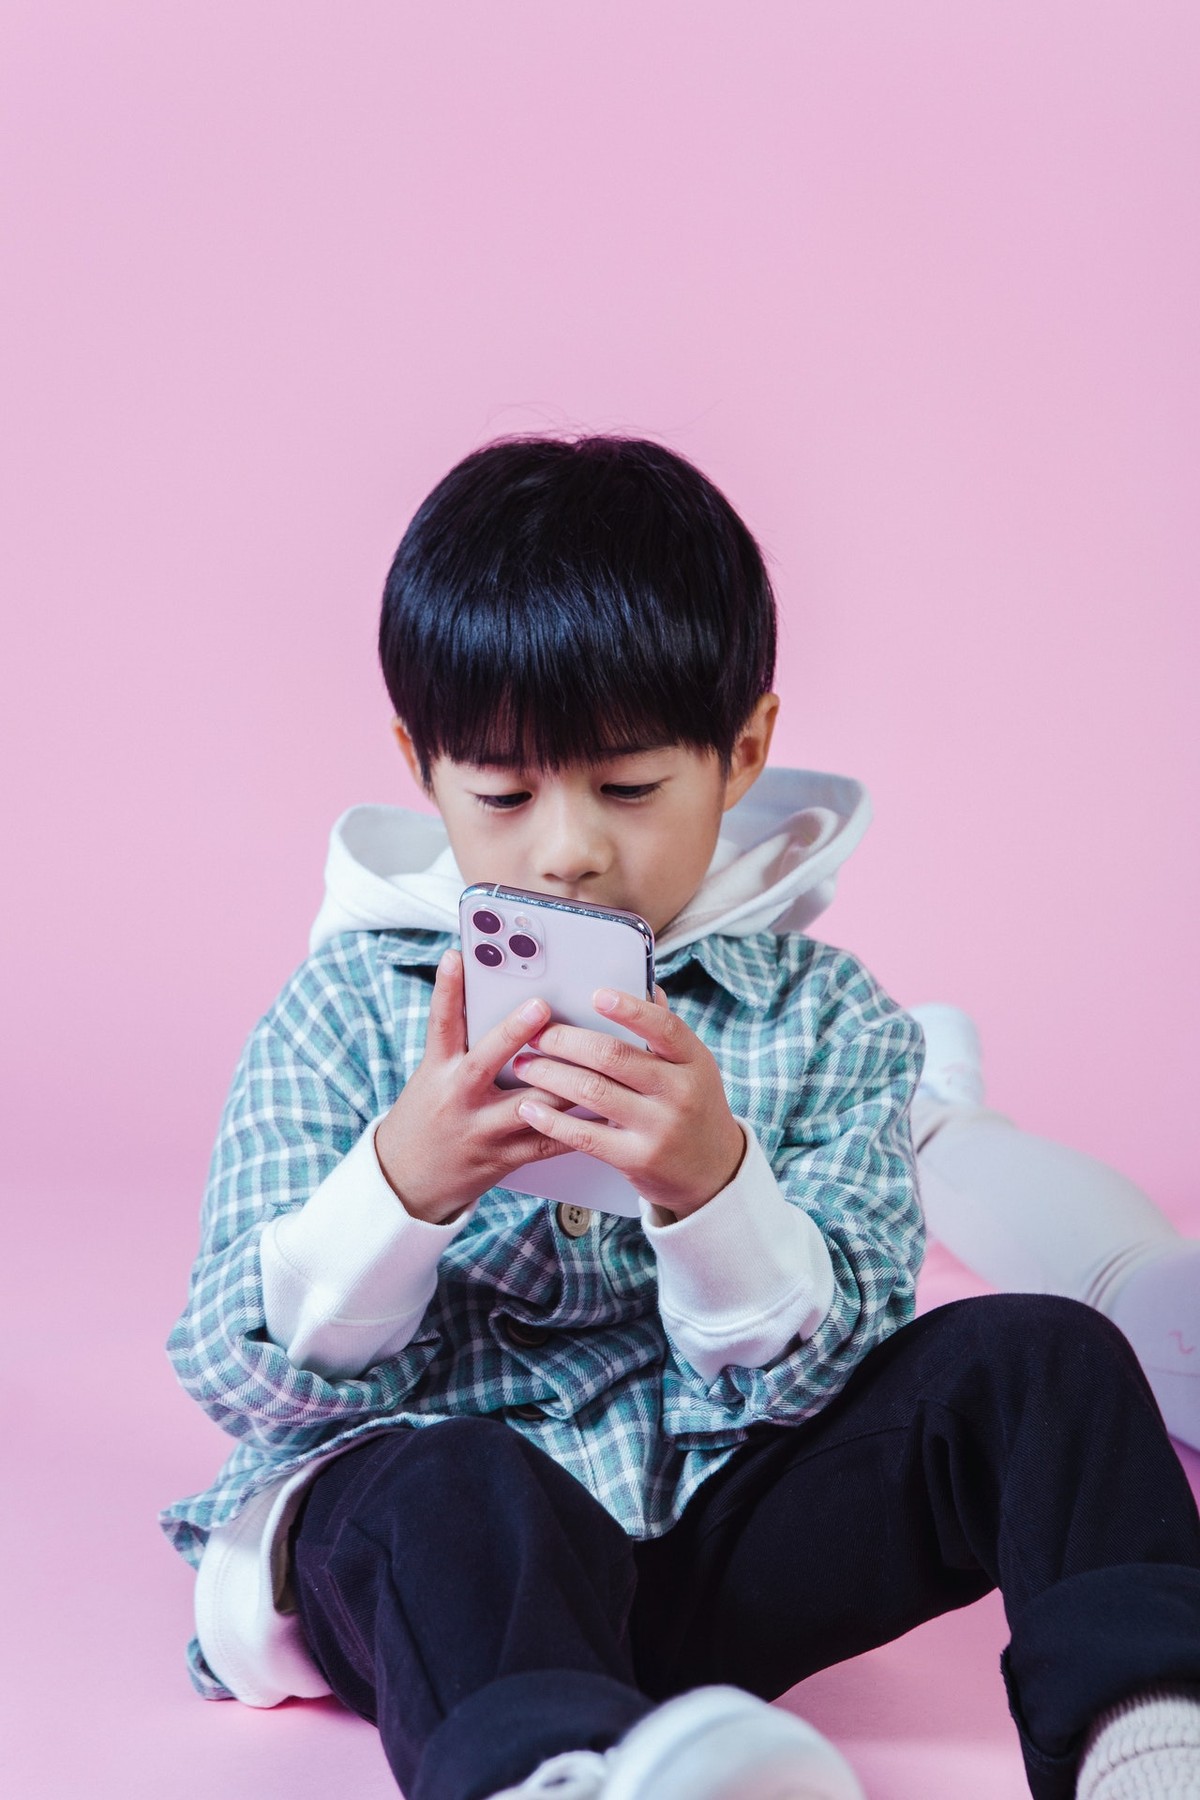 Como uso excessivo de celular impacta cérebro da criança | Saúde